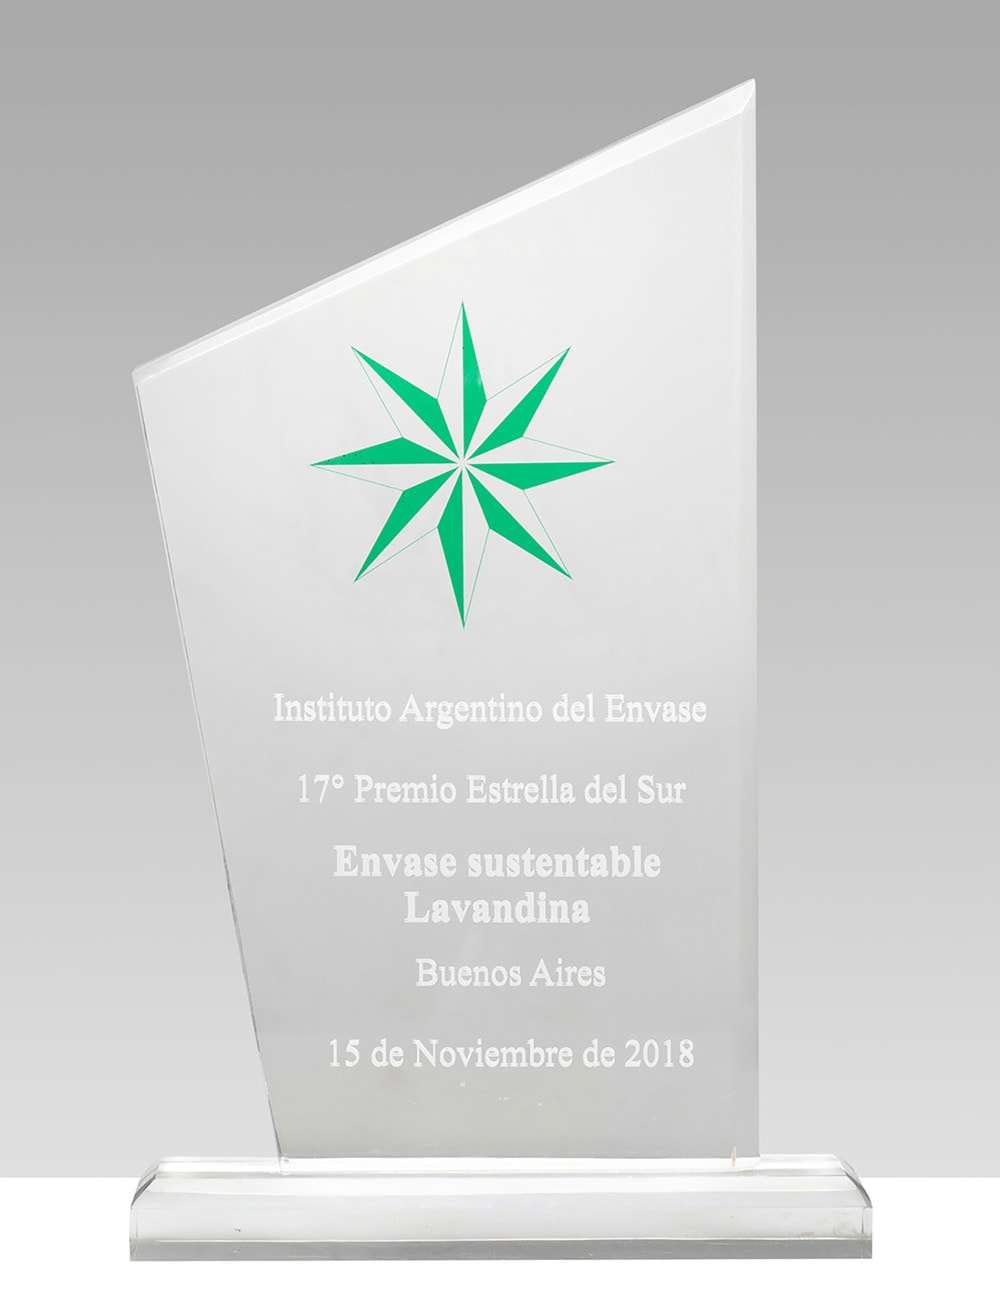 17º Premio Estrella del Sur - Envase sustentable Lavandina.